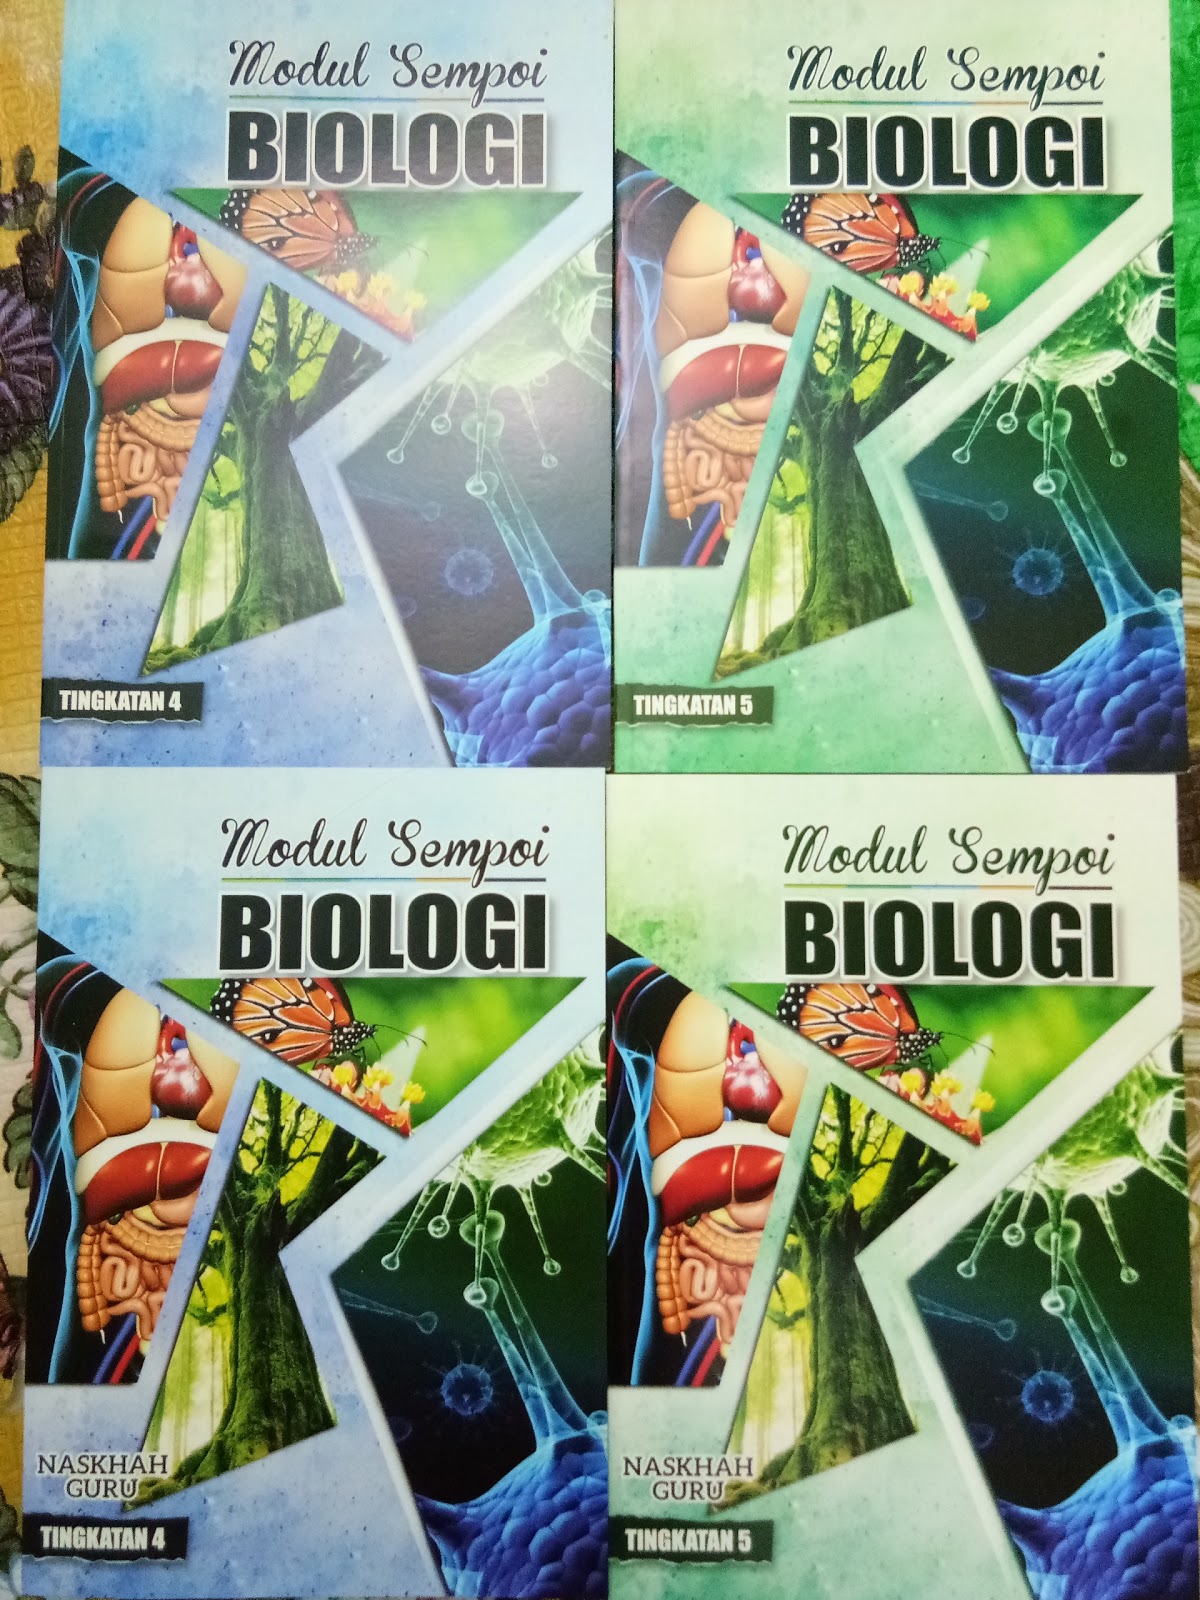 Biology A+: Modul Sempoi Biologi 2017